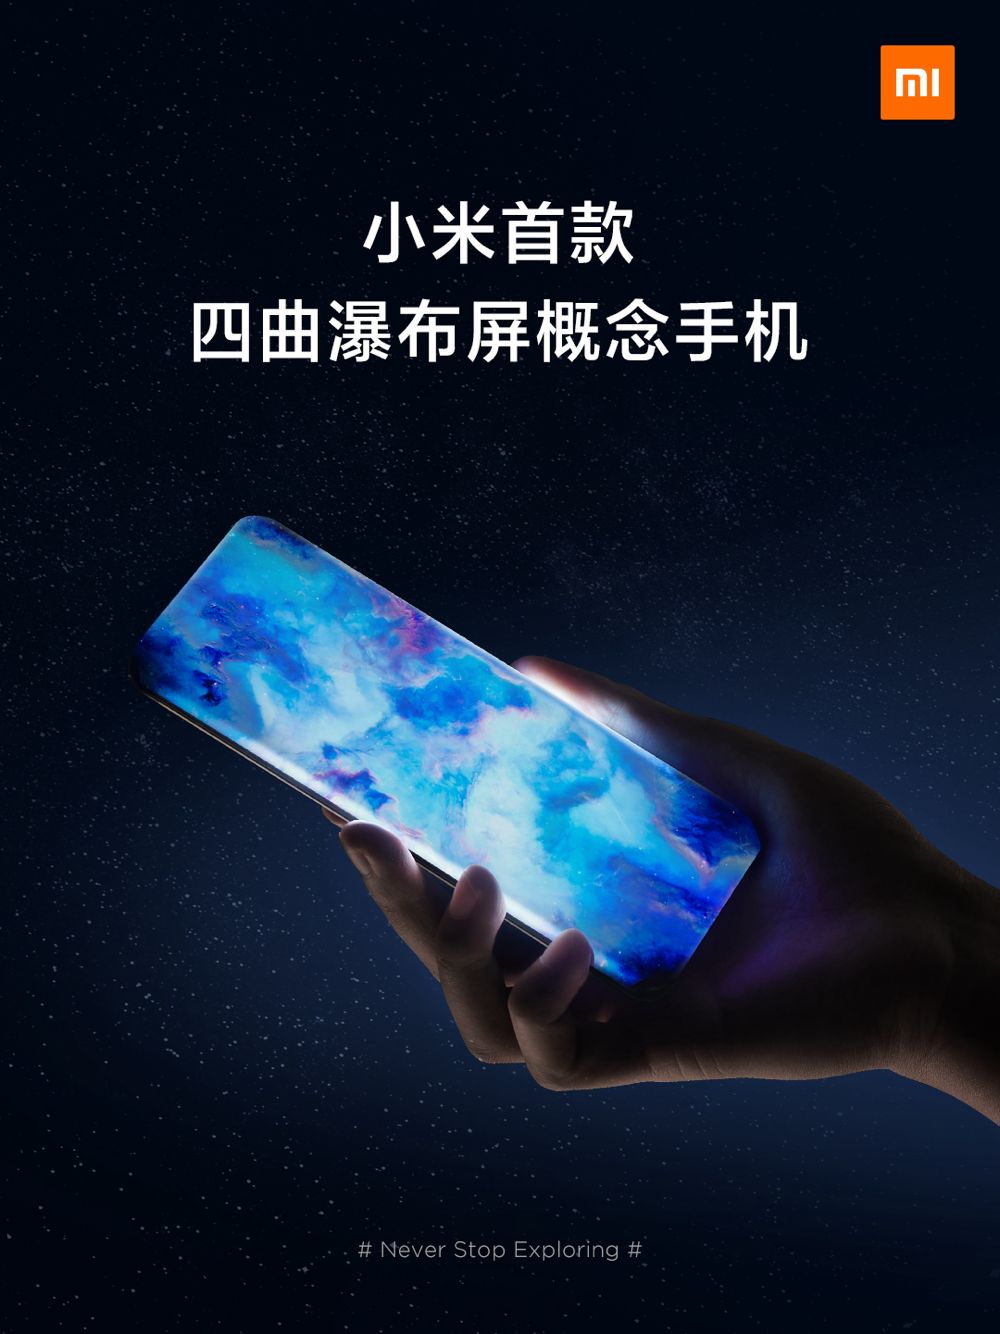 小米发布首款四曲瀑布屏概念手机 探索未来无孔化手机形态